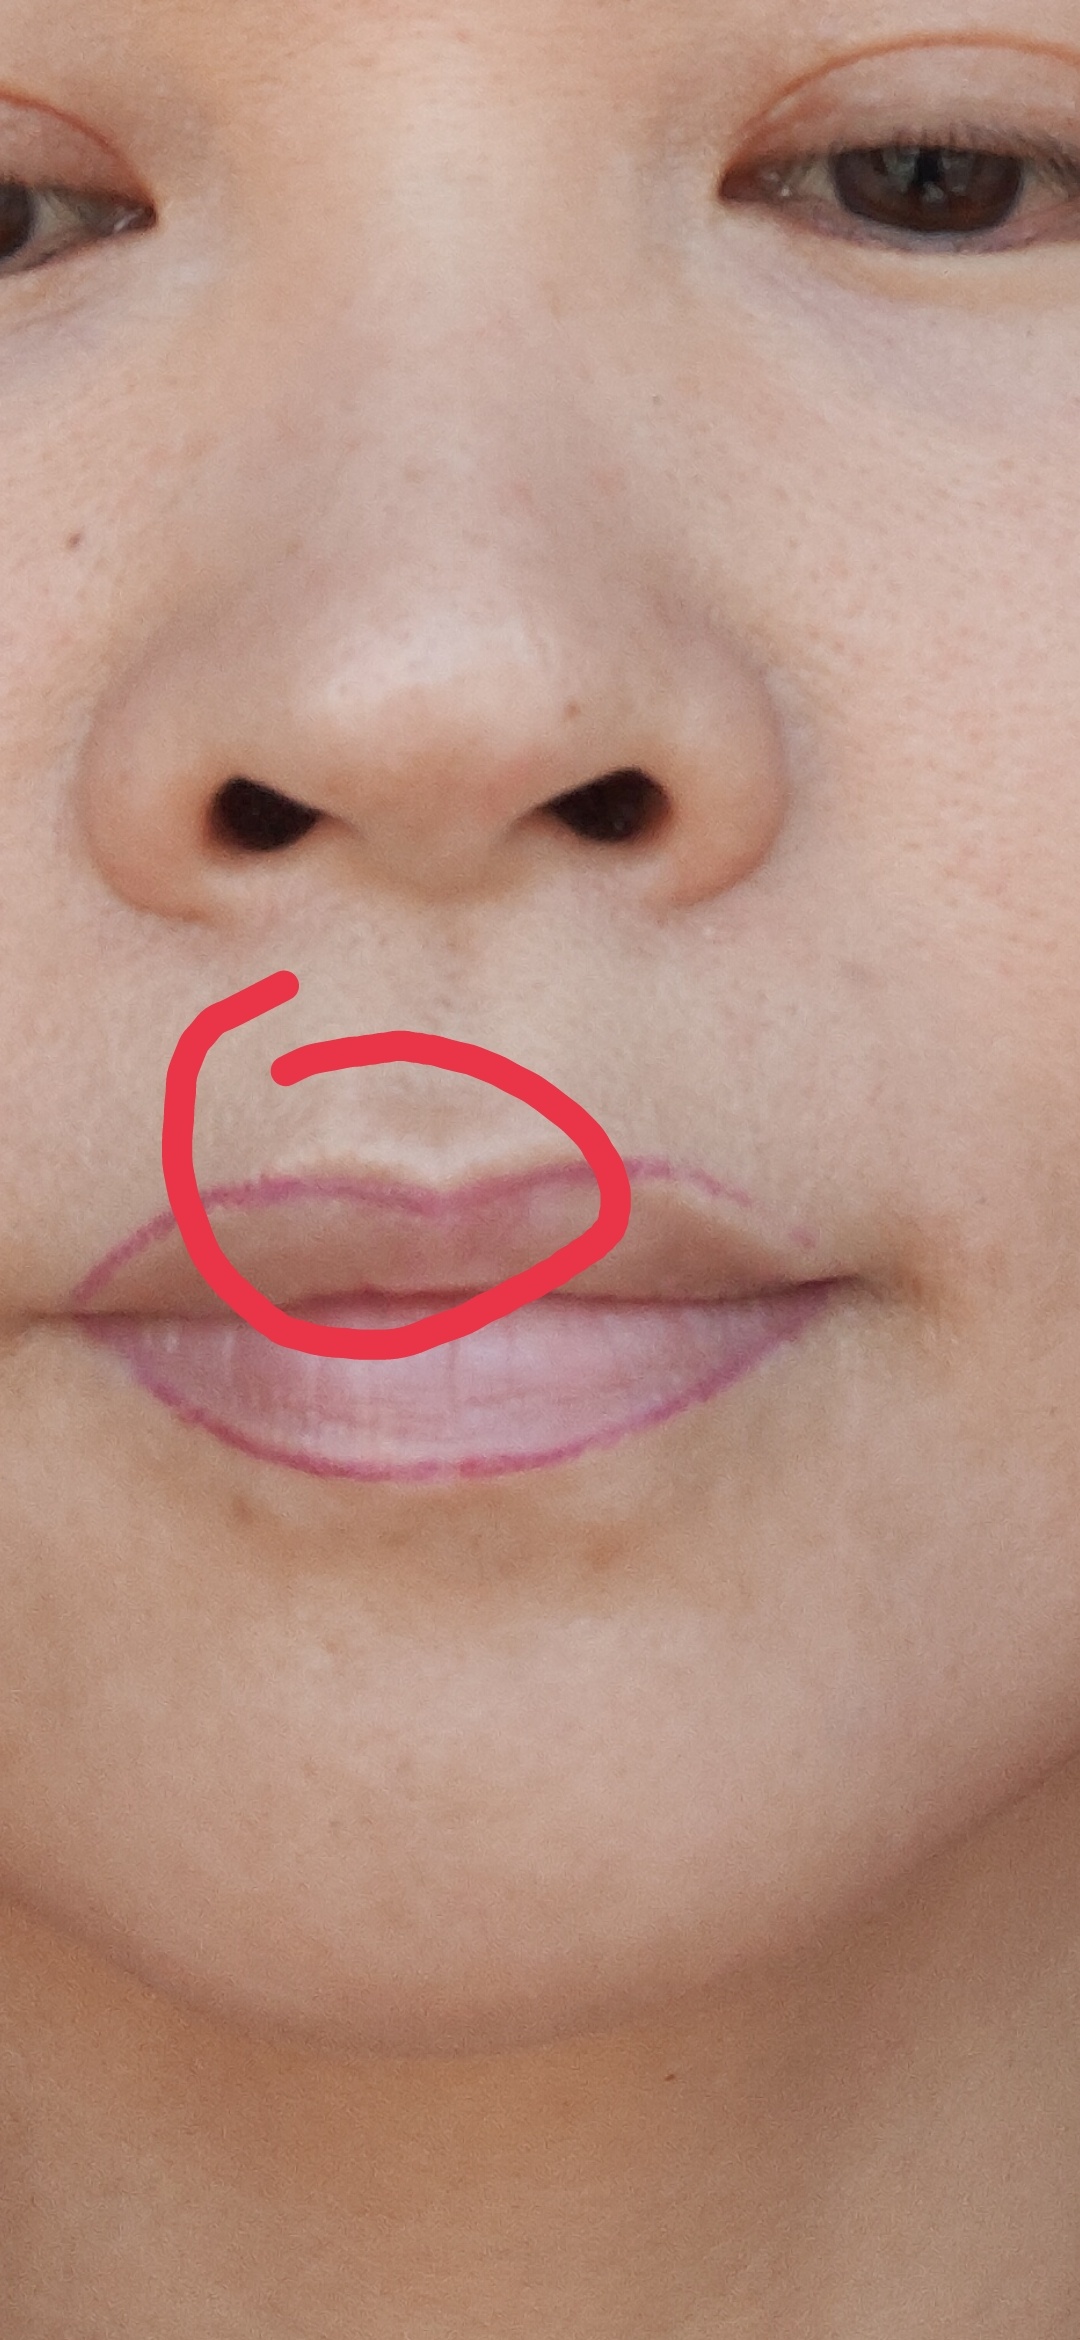 激光洗唇线导致的增生疤痕怎么去除？ 